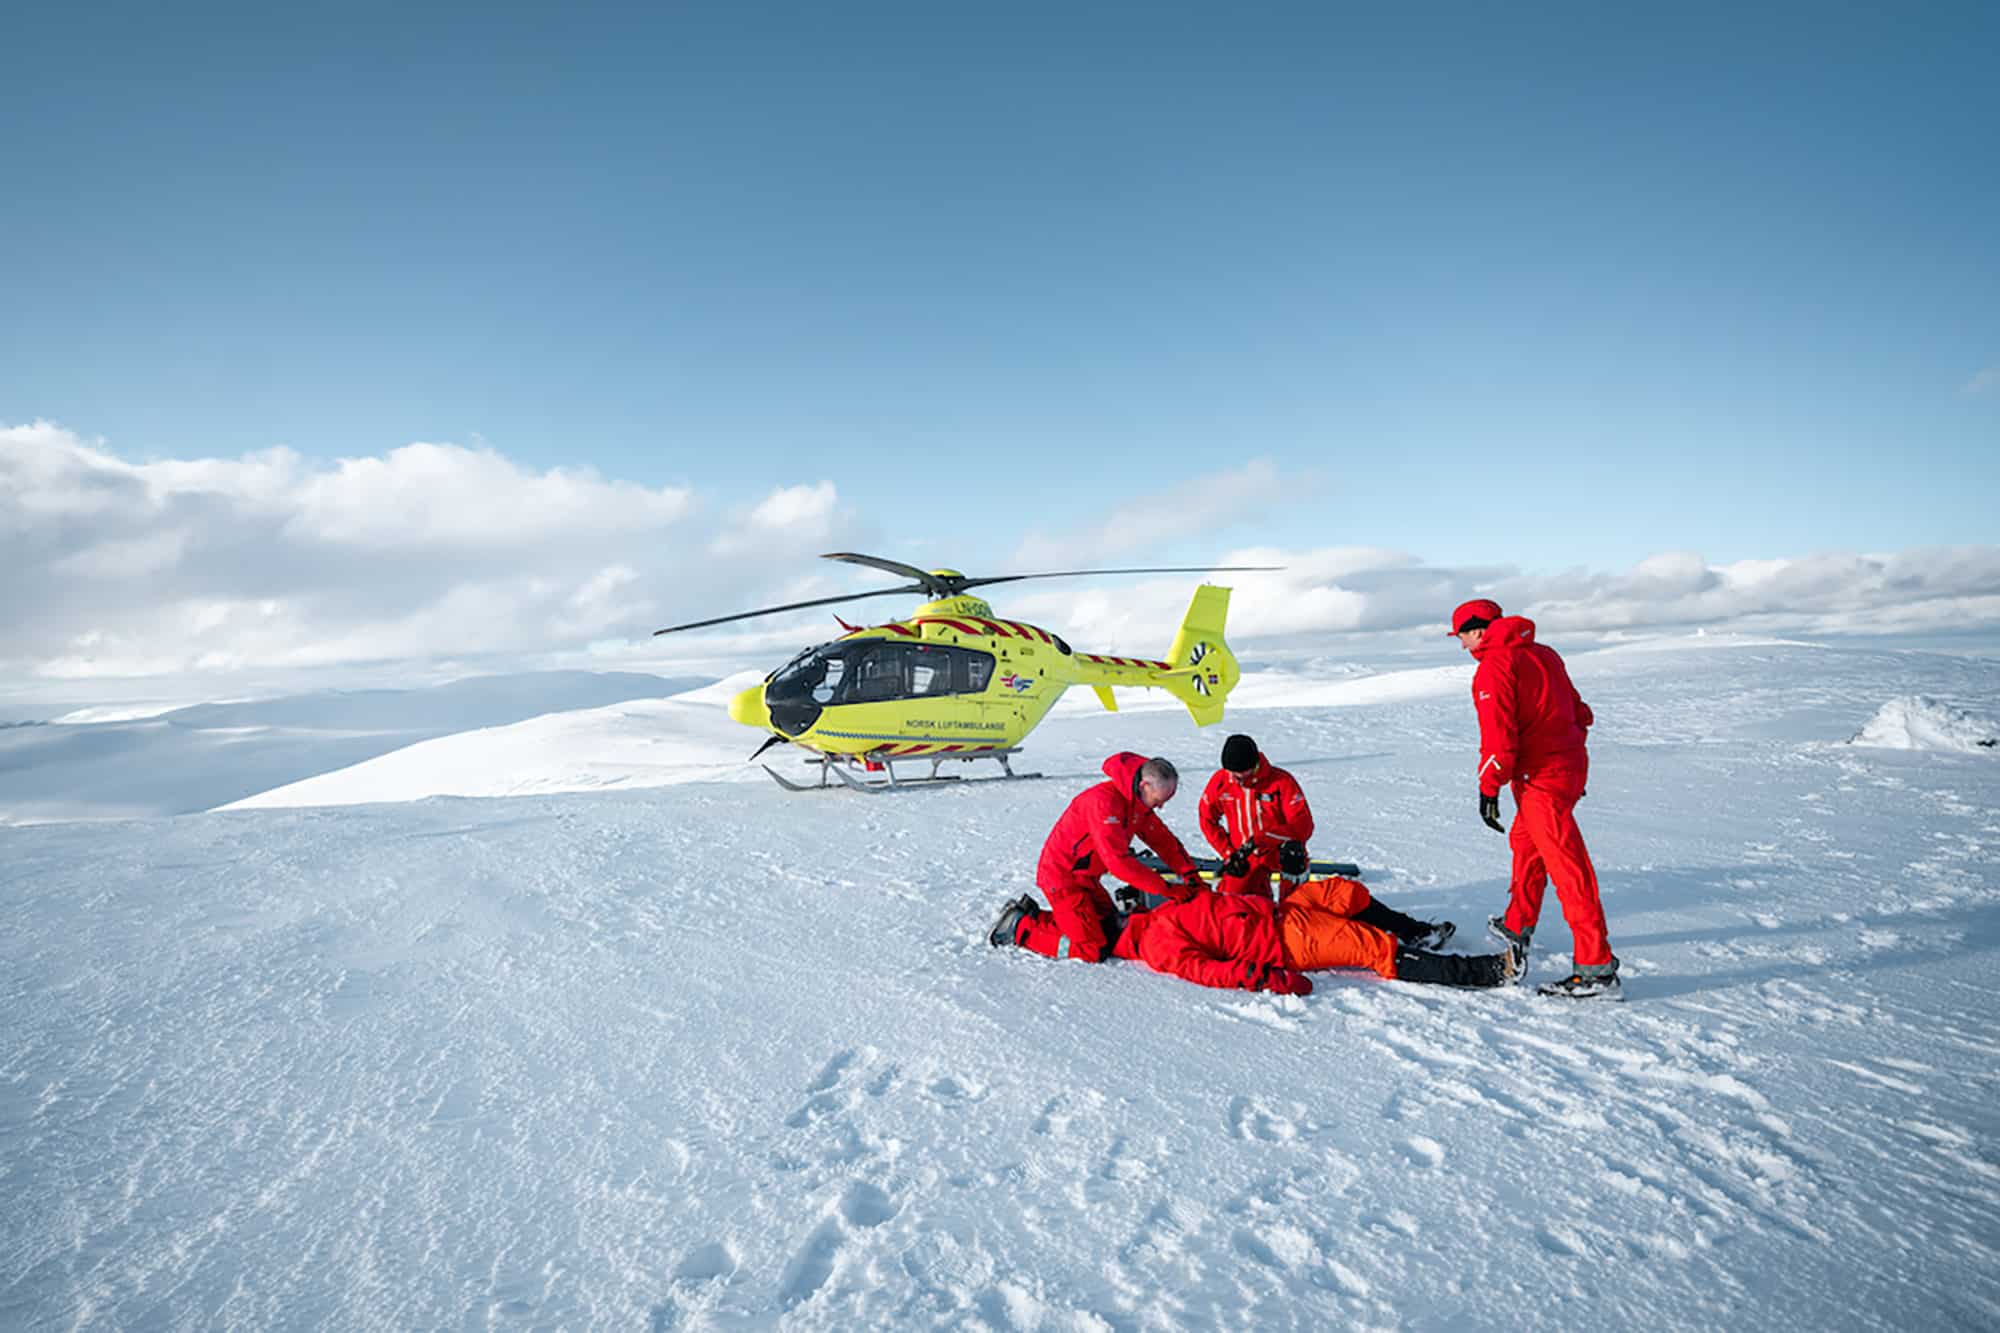 Luftambulansepersonell hjelper pasient på snødekt fjelltopp. Legehelikopter i bakgrunnen.